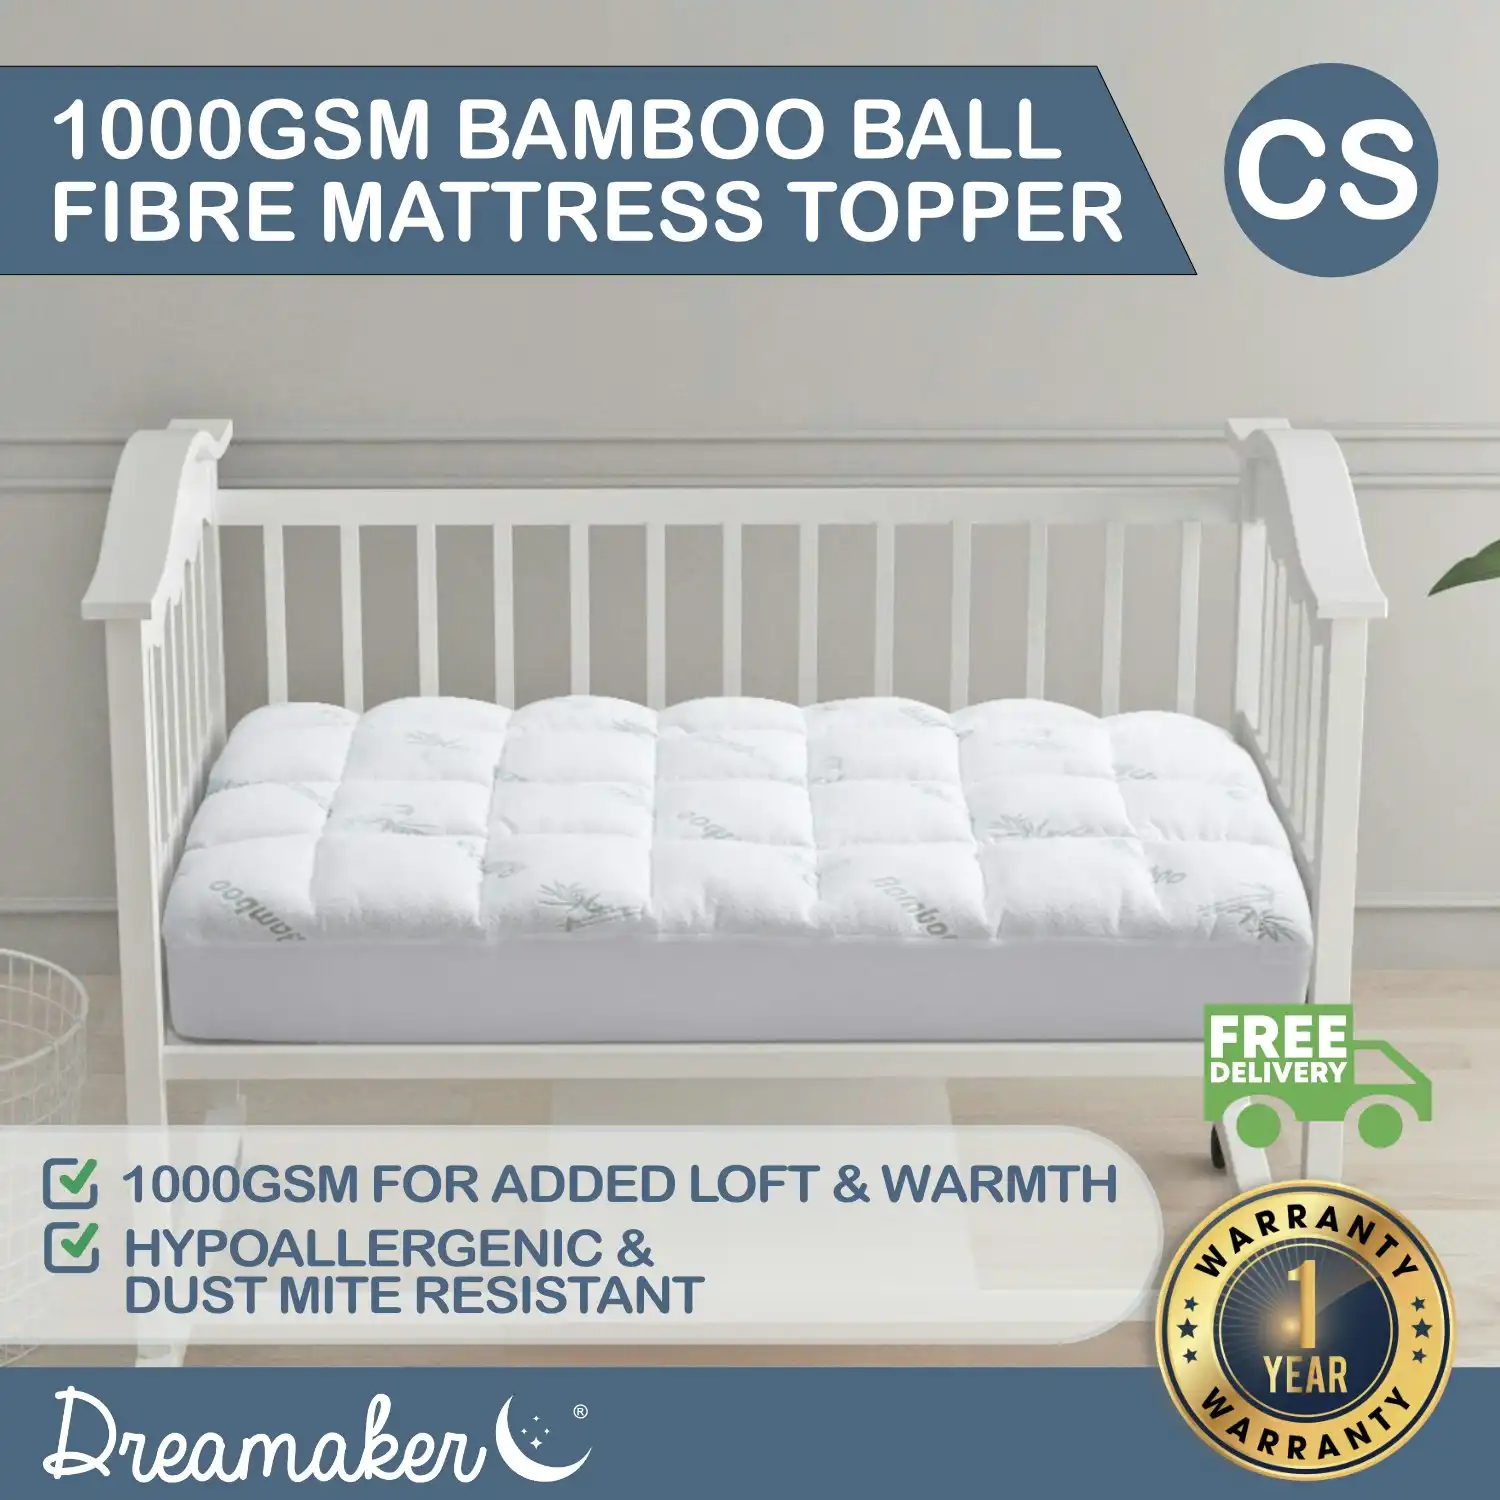 Dreamaker 1000GSM Bamboo Covered Ball Fibre Mattress Topper Cot Standard